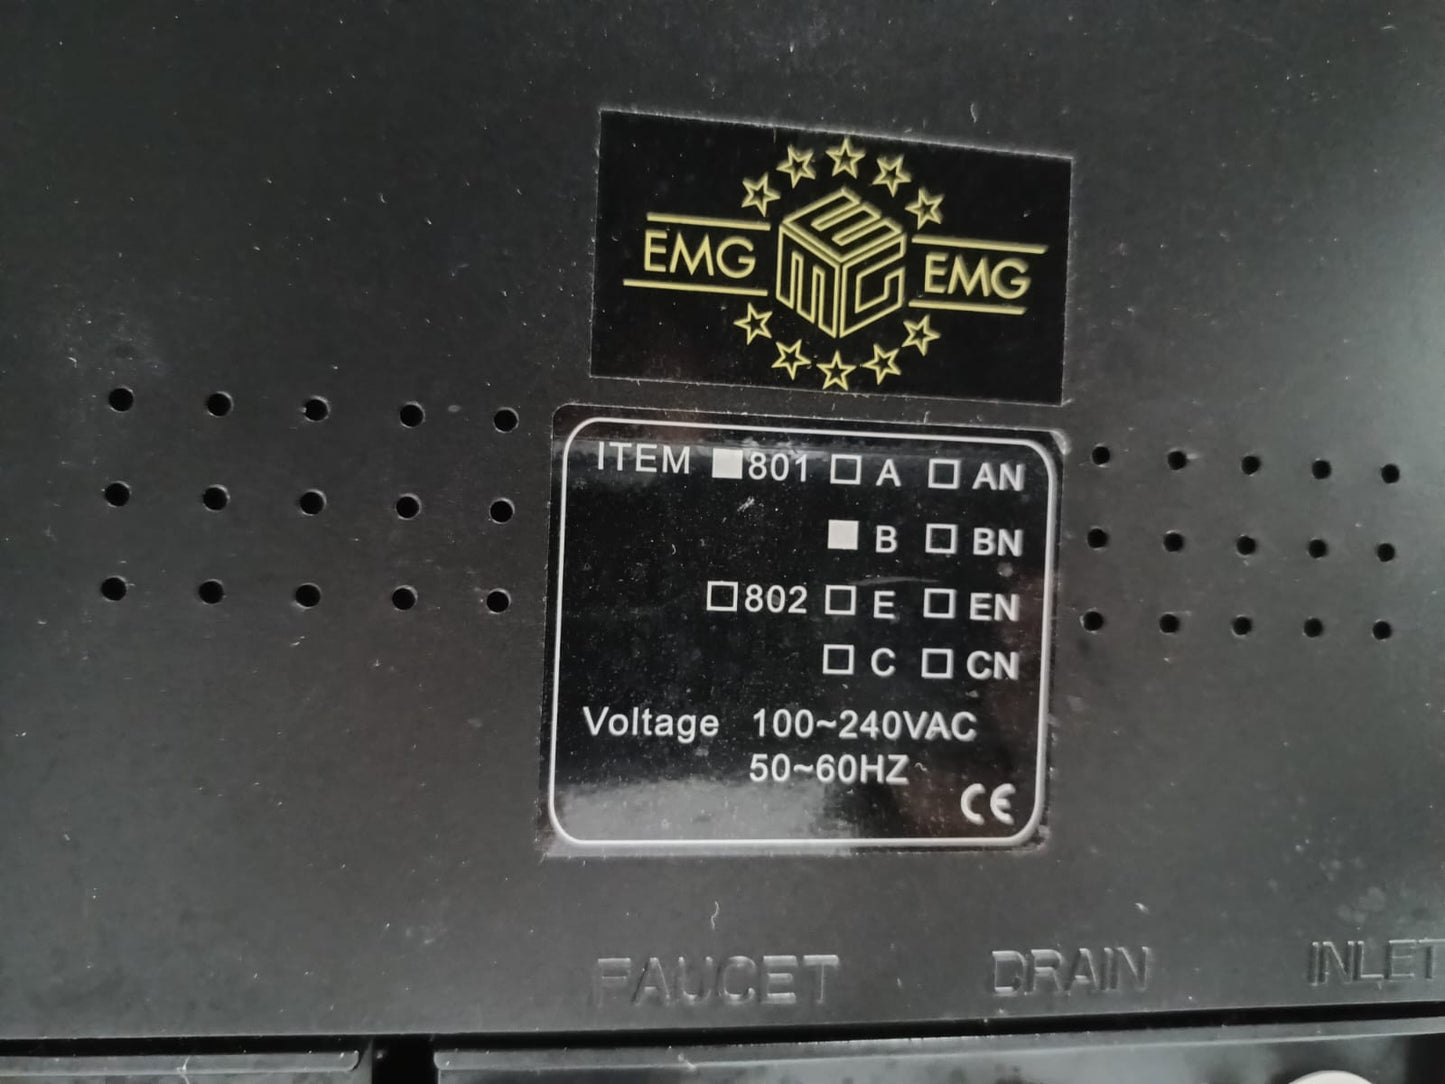 EMG Umkehrosmoseanlage Kompakt - Gebraucht!!!